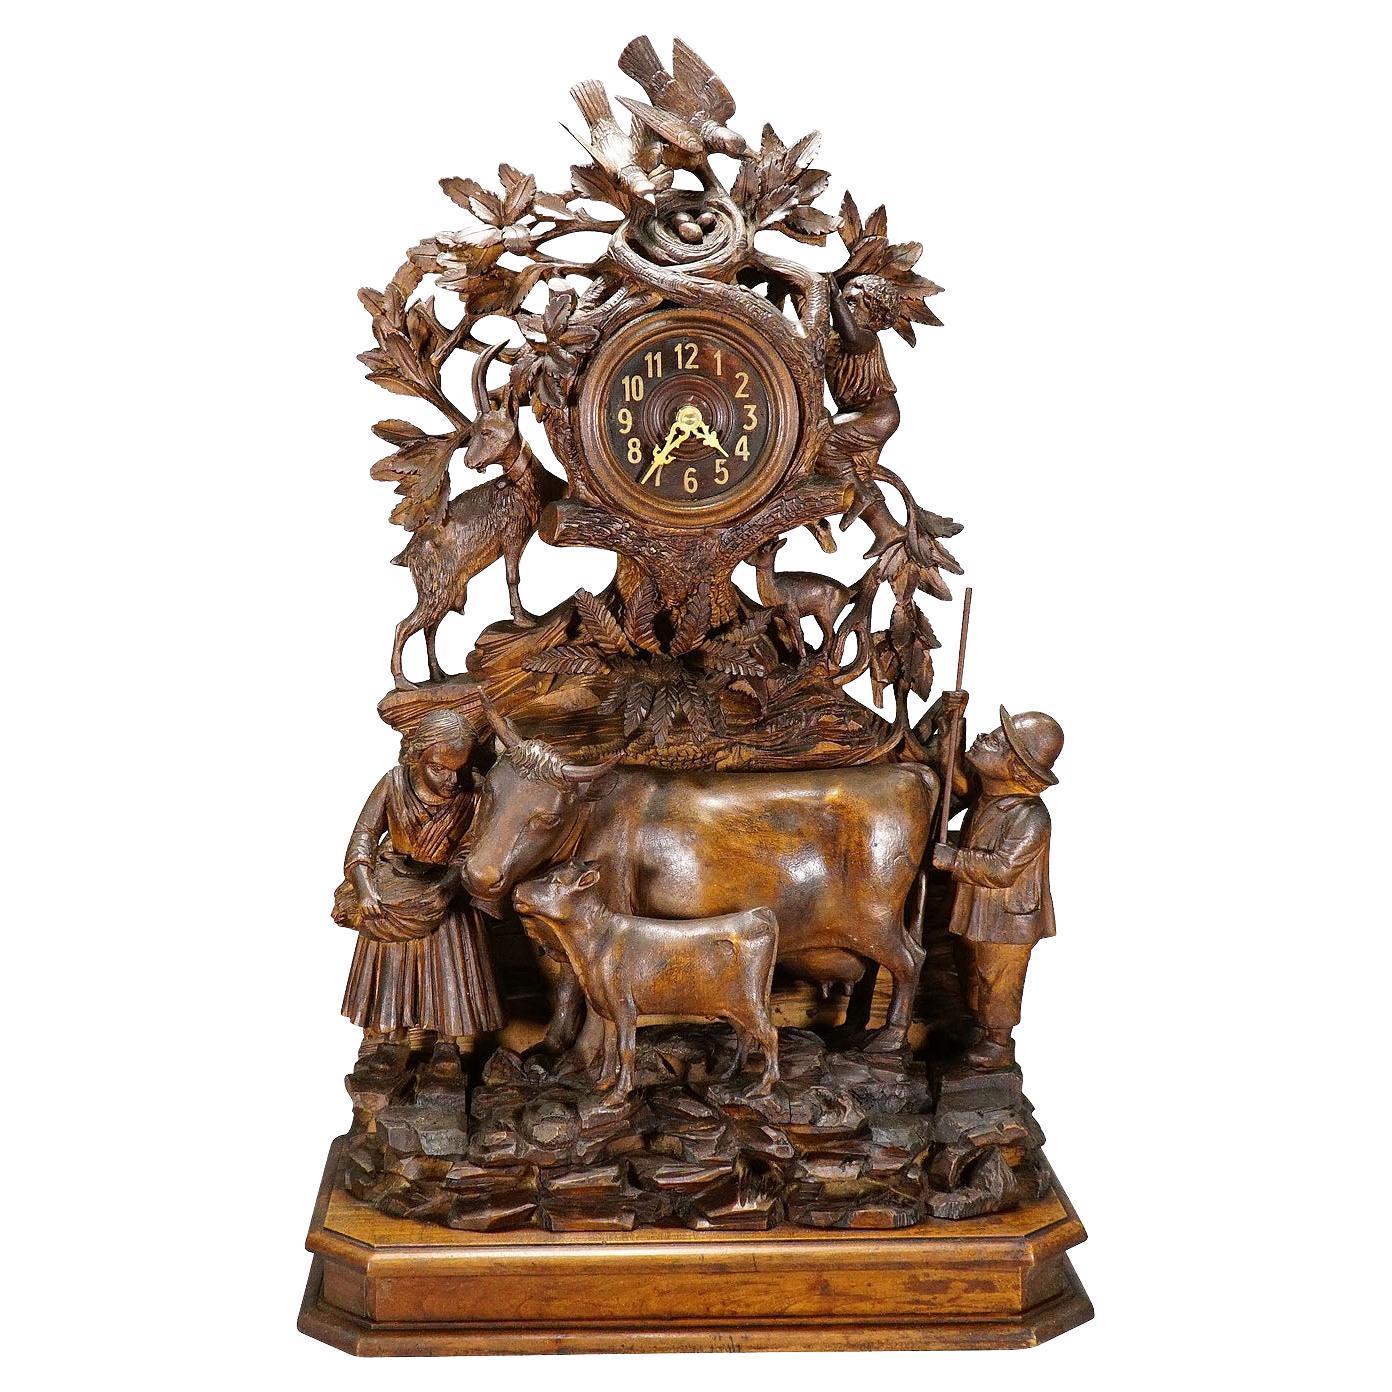 Pendule de cheminée ancienne avec famille d'horlogers, chèvres et bétail